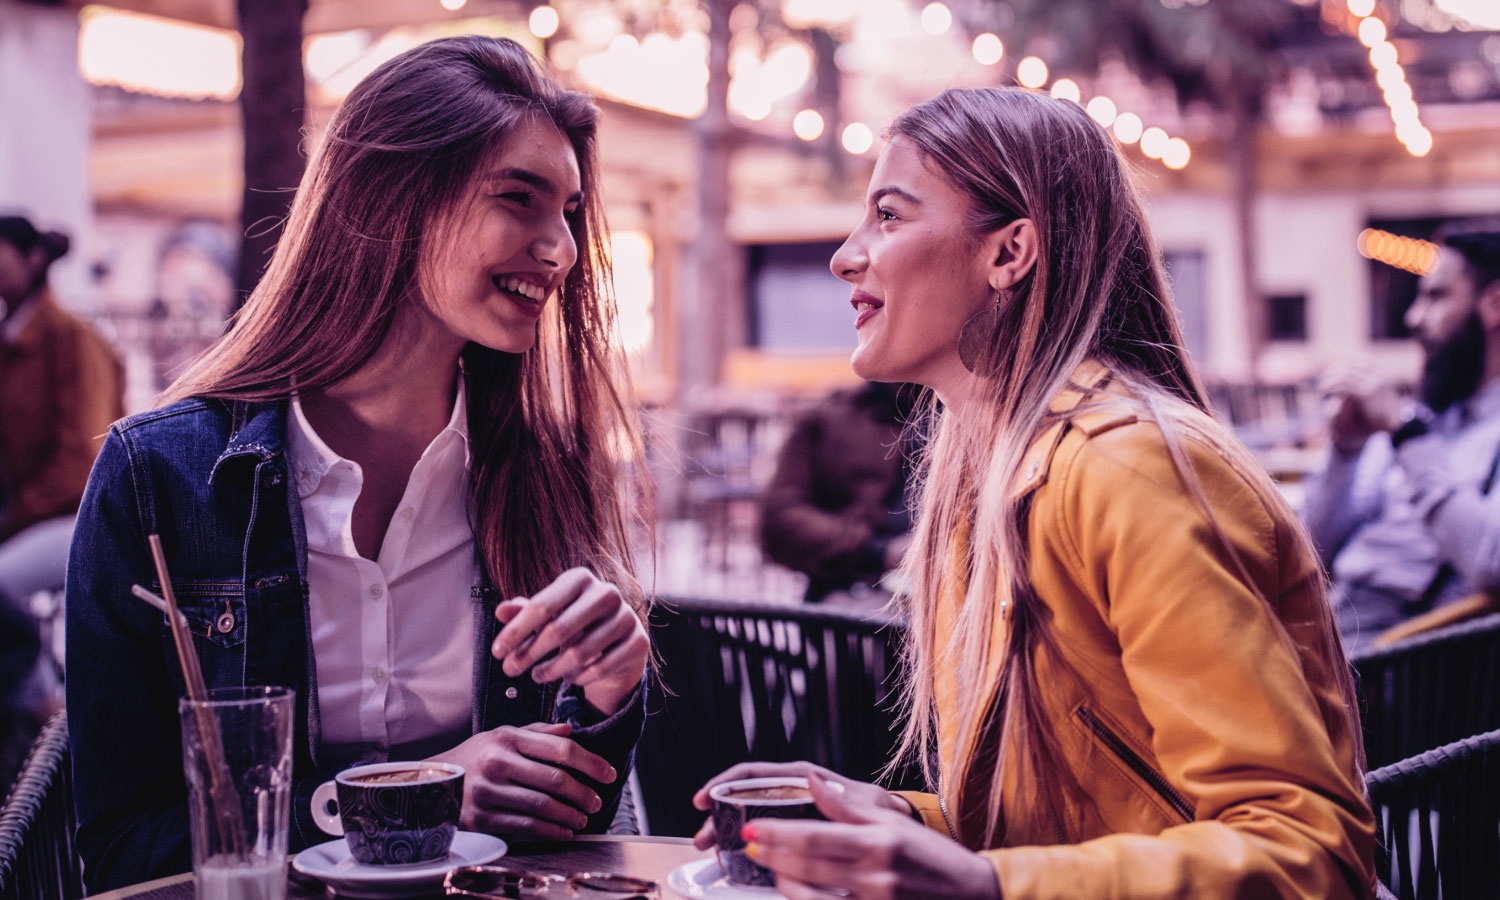 Photographie de deux femmes ayant une conversation amicale autour d'un café